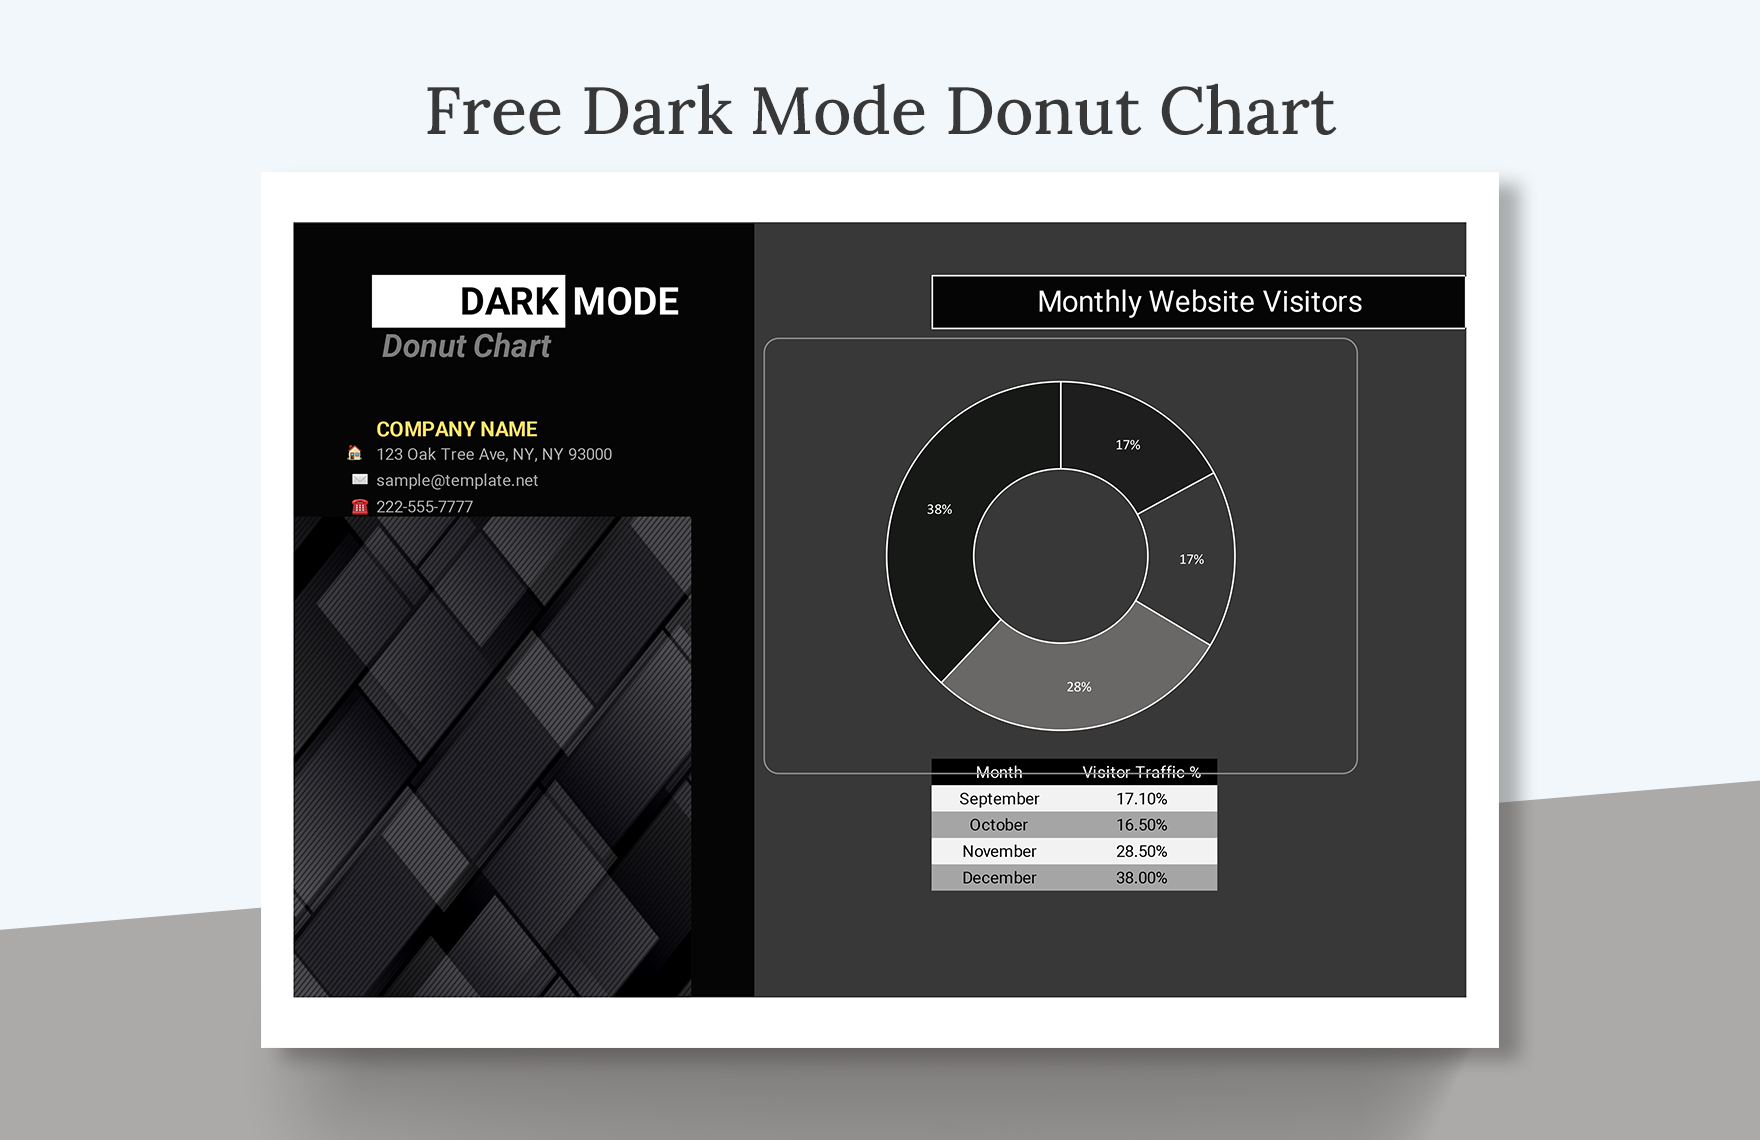 Free Dark Mode Donut Chart